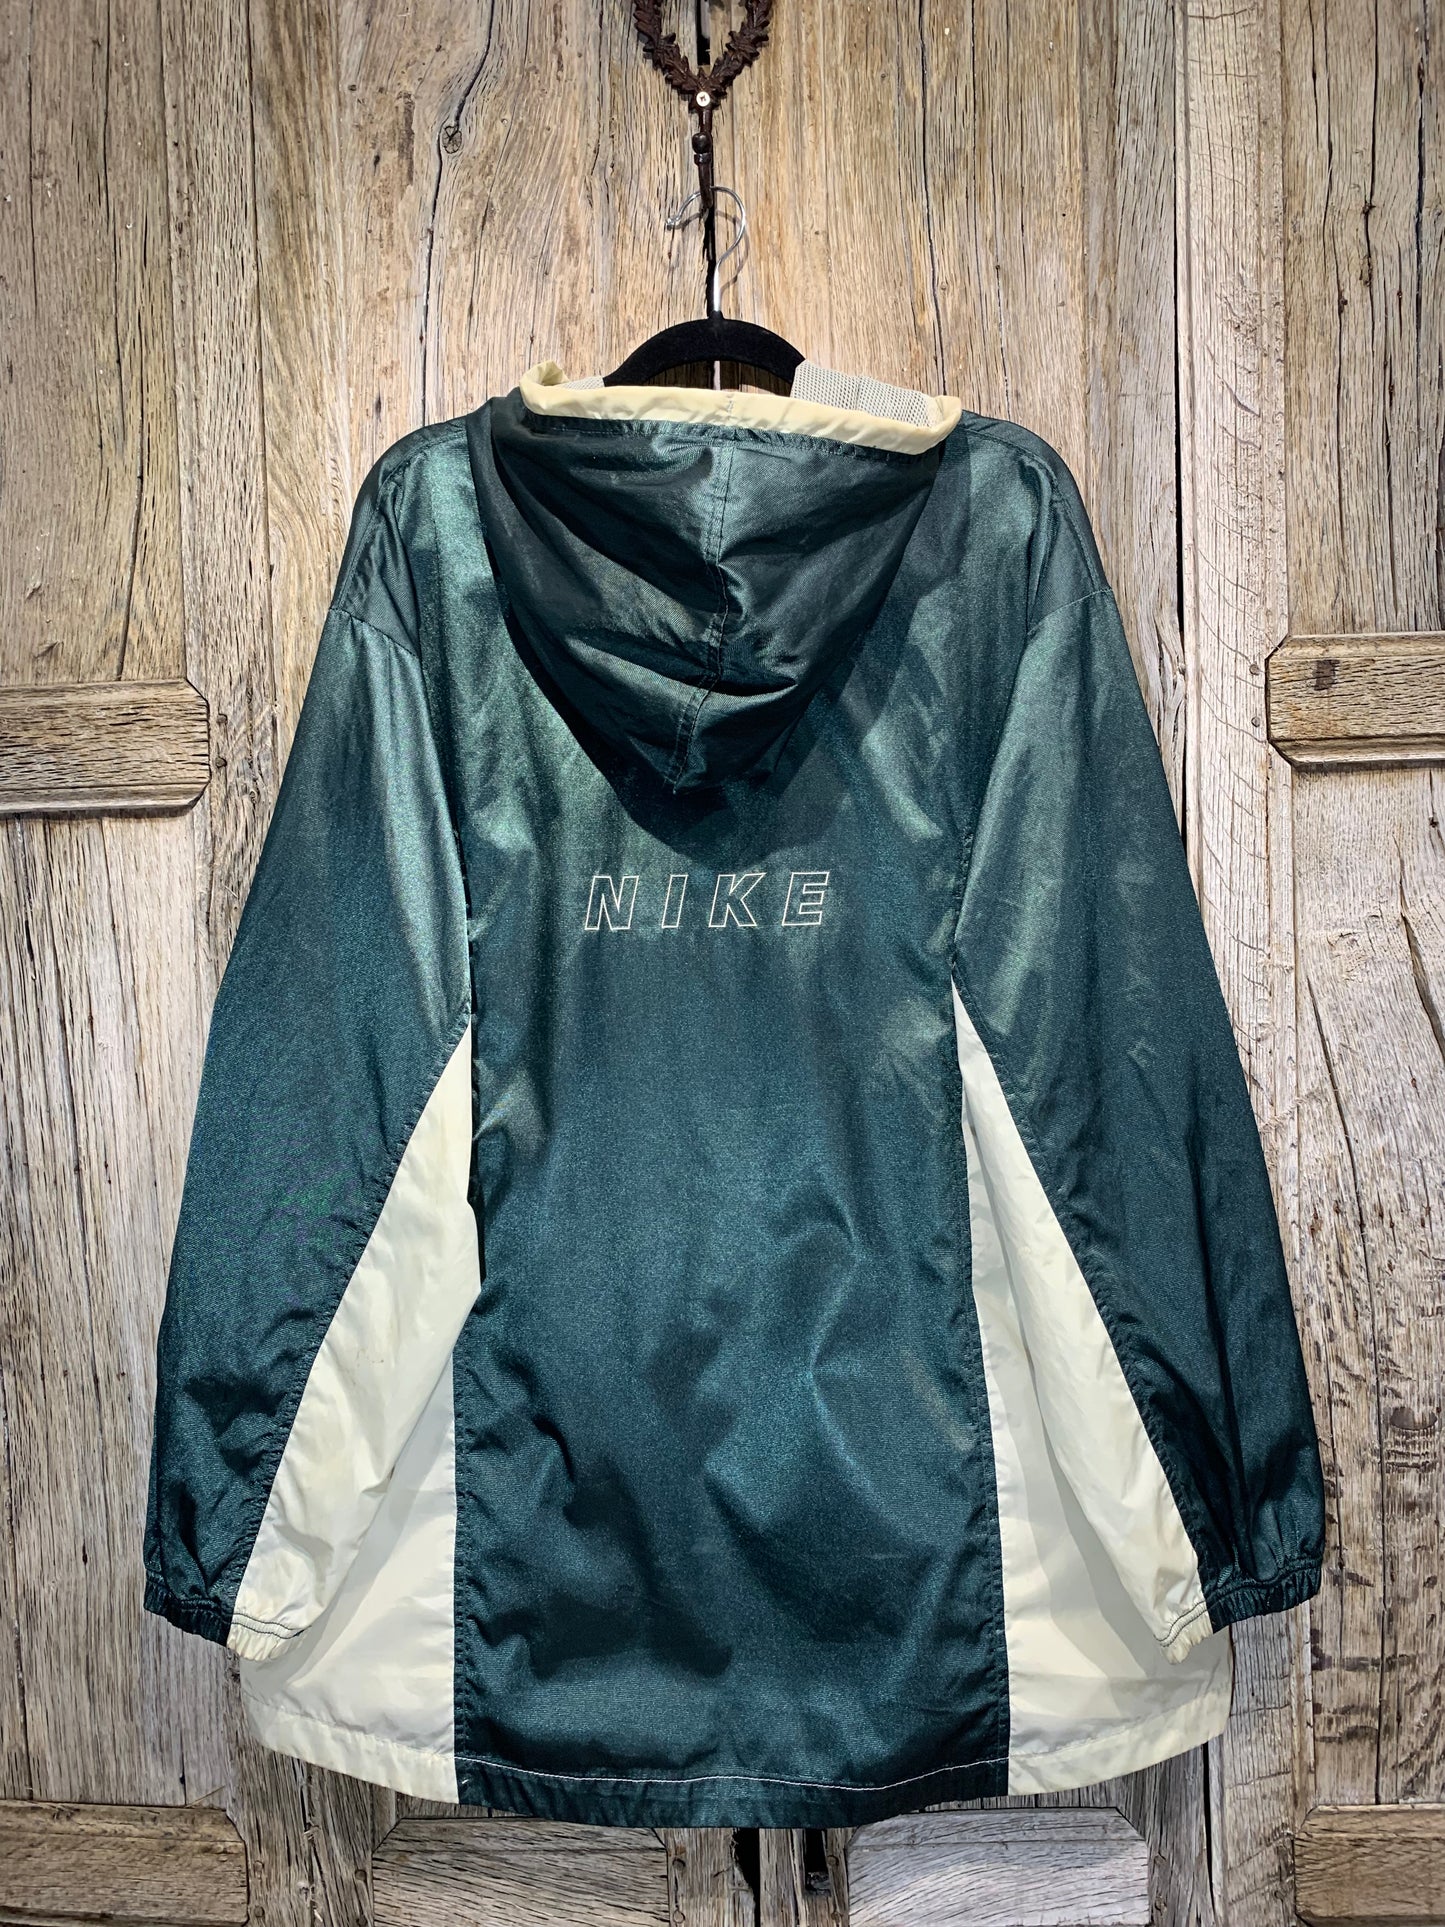 Vintage Nike Green Zip Jacket